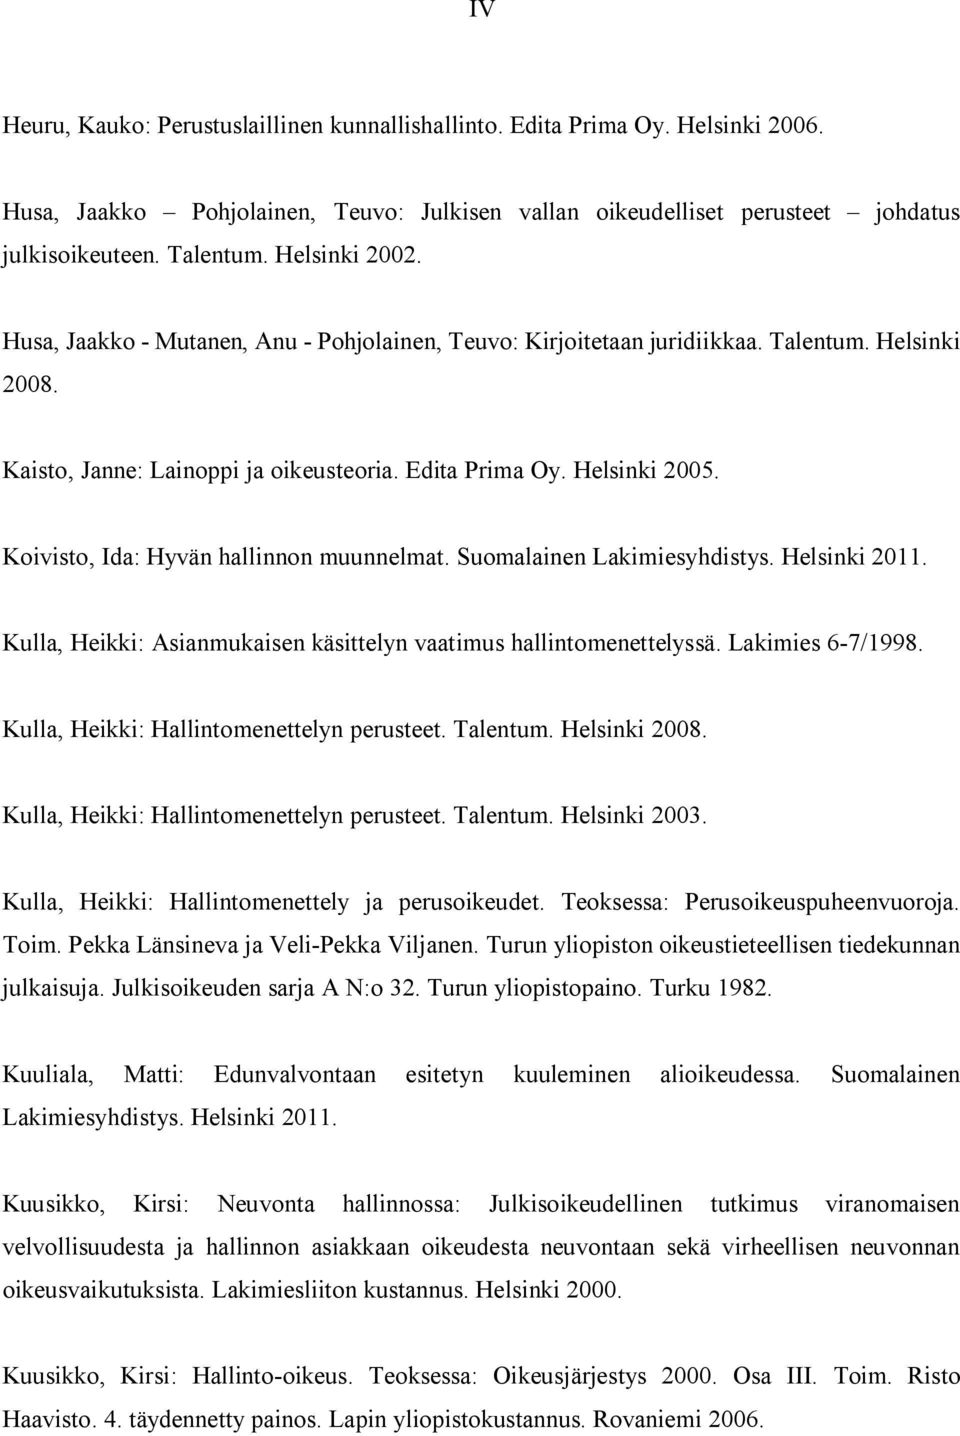 Koivisto, Ida: Hyvän hallinnon muunnelmat. Suomalainen Lakimiesyhdistys. Helsinki 2011. Kulla, Heikki: Asianmukaisen käsittelyn vaatimus hallintomenettelyssä. Lakimies 6-7/1998.